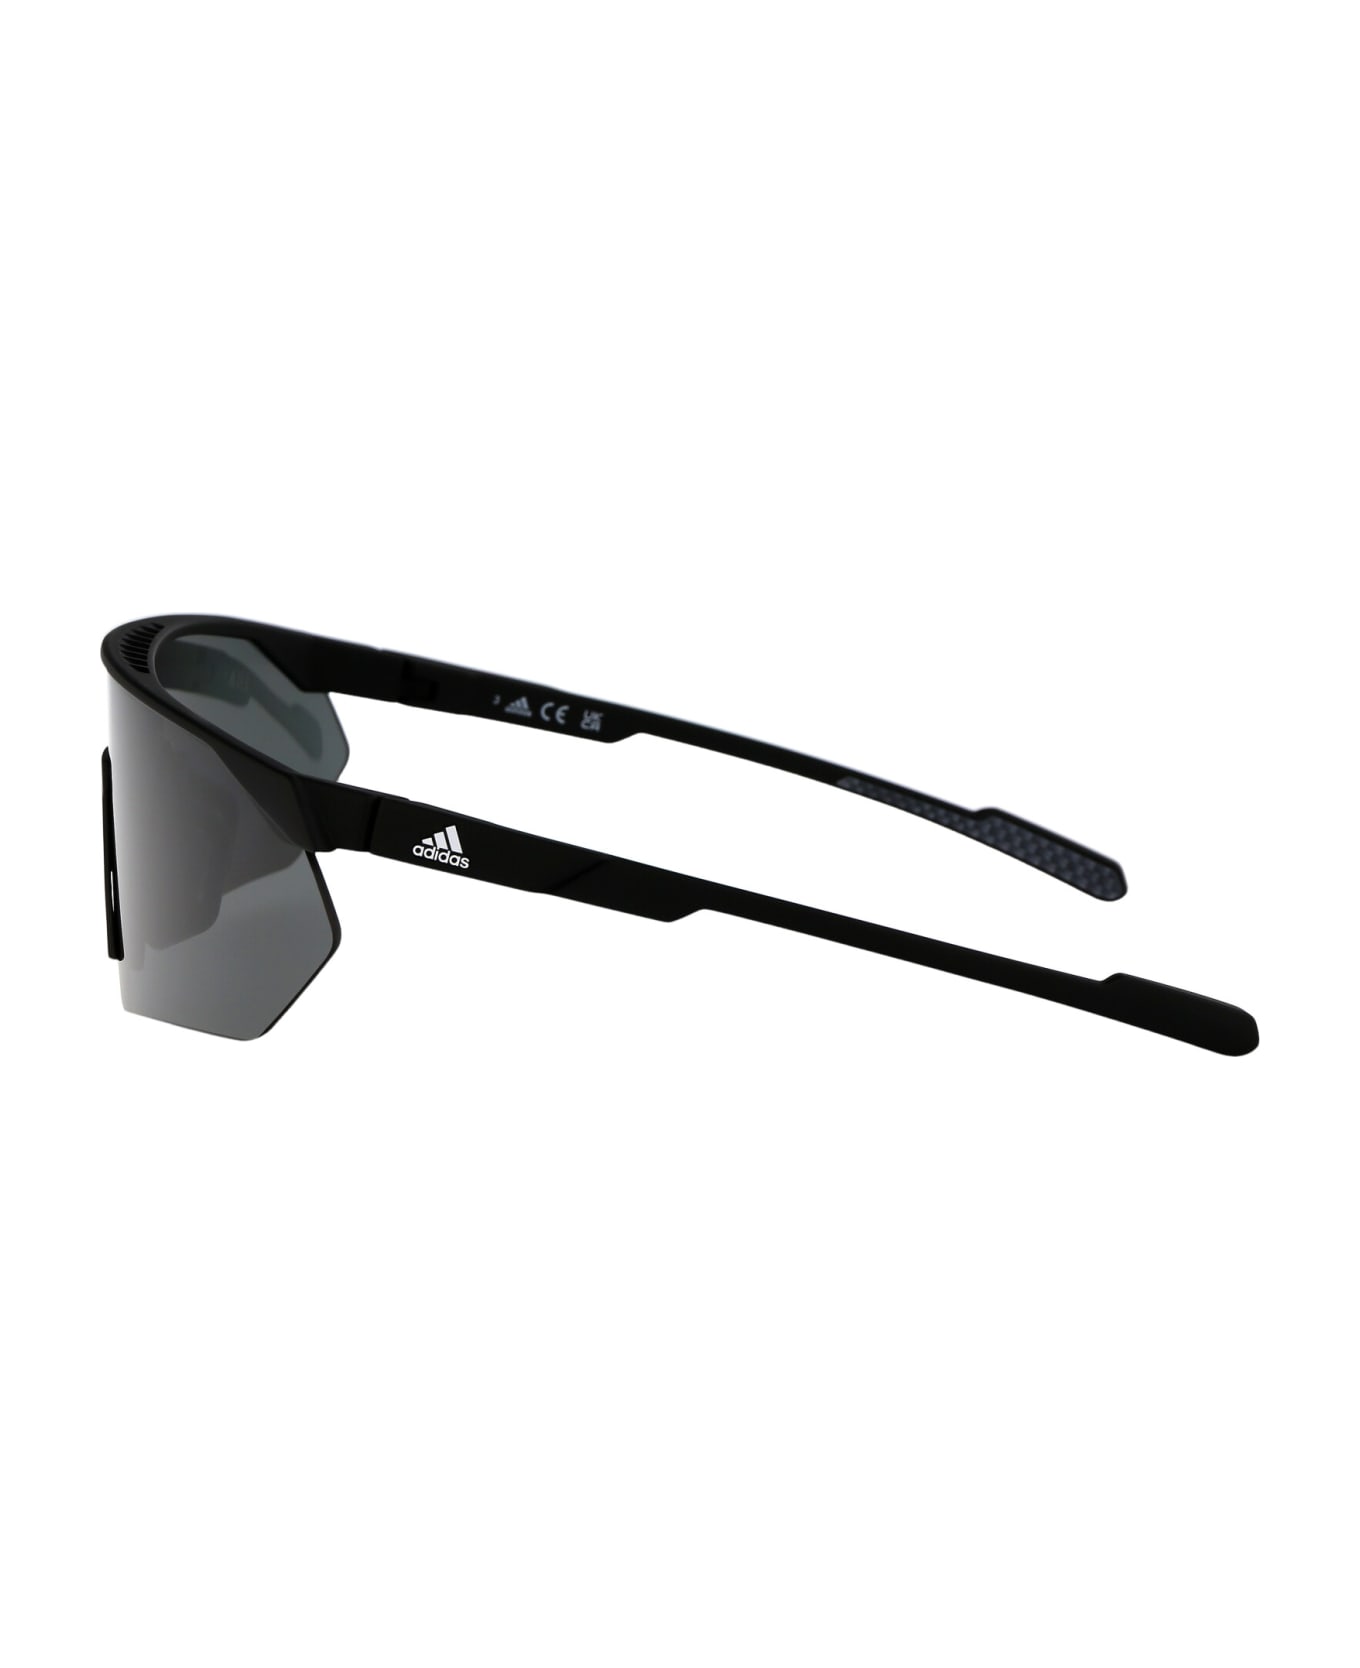 Adidas Prfm Shield Sunglasses - 02A Nero Opaco/Fumo